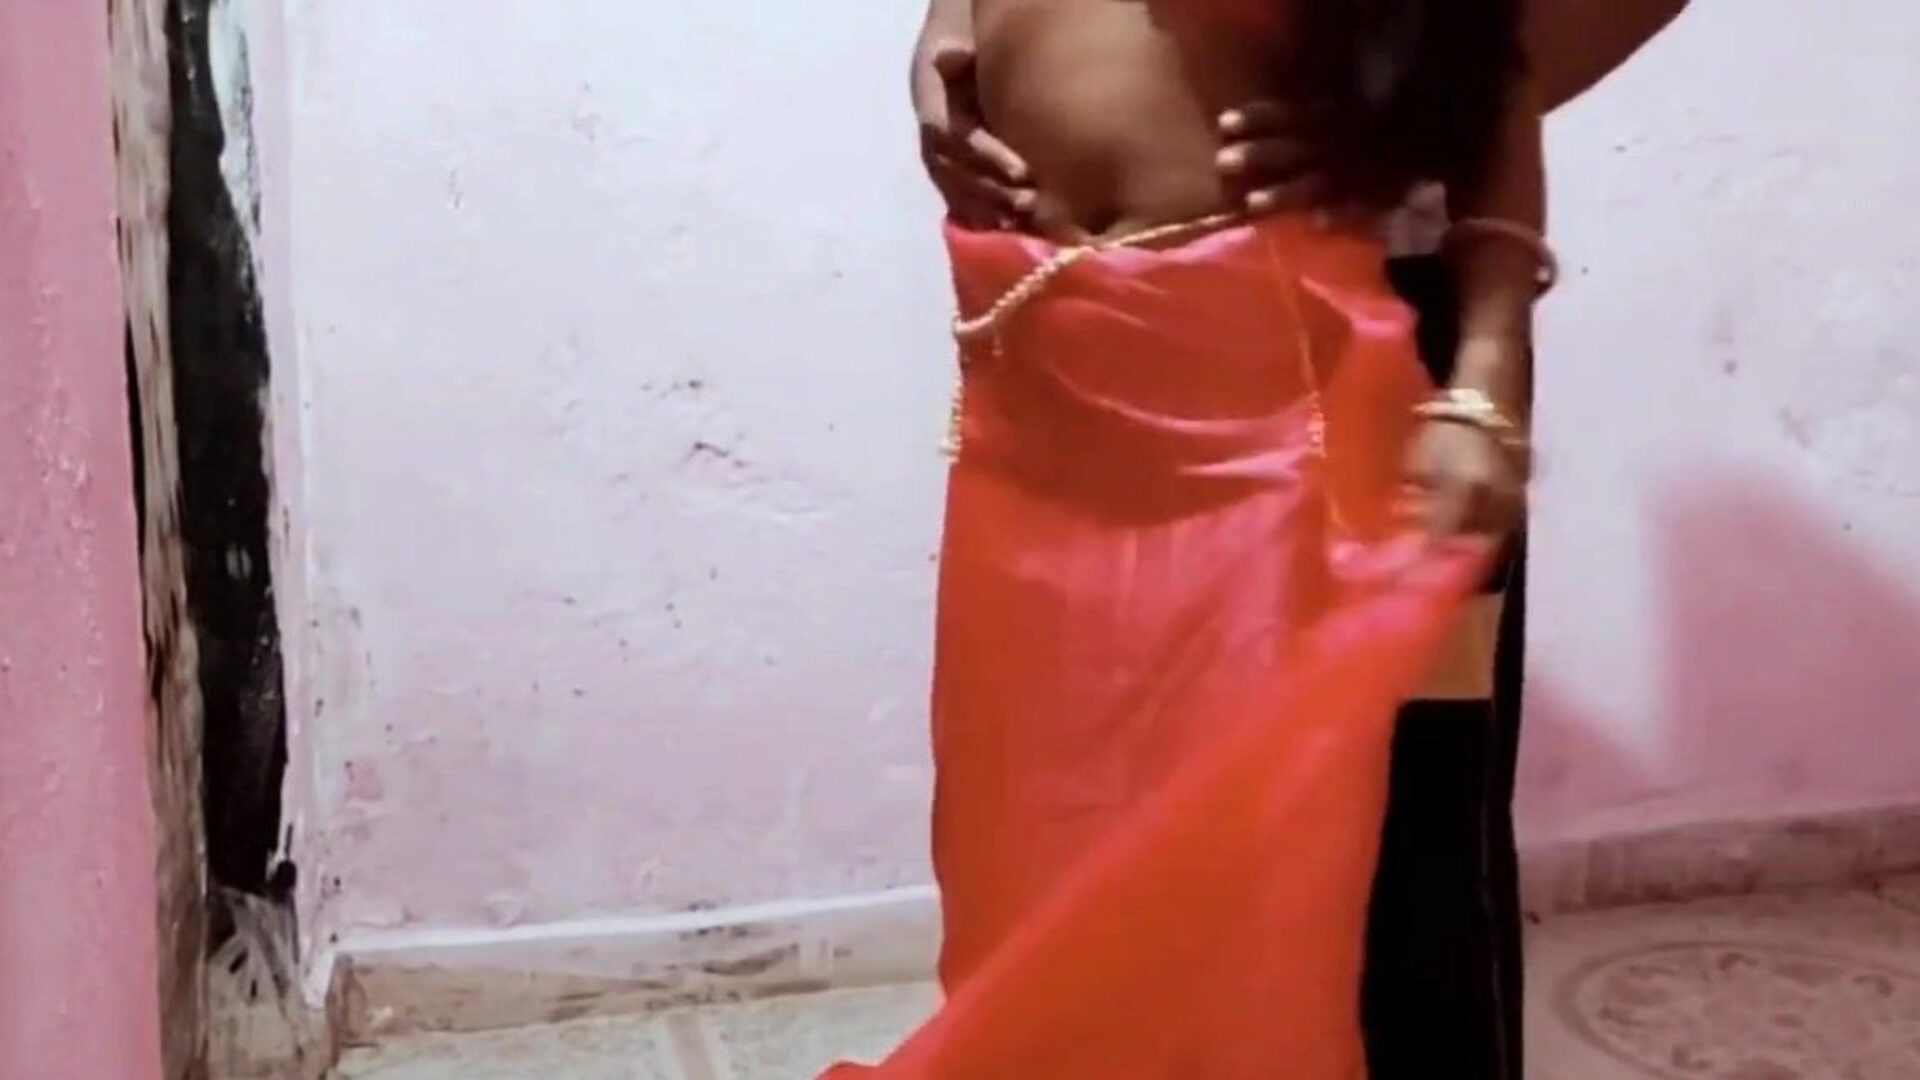 alex ne bhabhi ko choda room diversão com o marido: porn b9 grátis assistir alex ne bhabhi ko choda room diversão com cena de filme do marido em xhamster - o arquivo definitivo de cenas de filmes de tubo pornográfico sri lankan asiático hd xxx